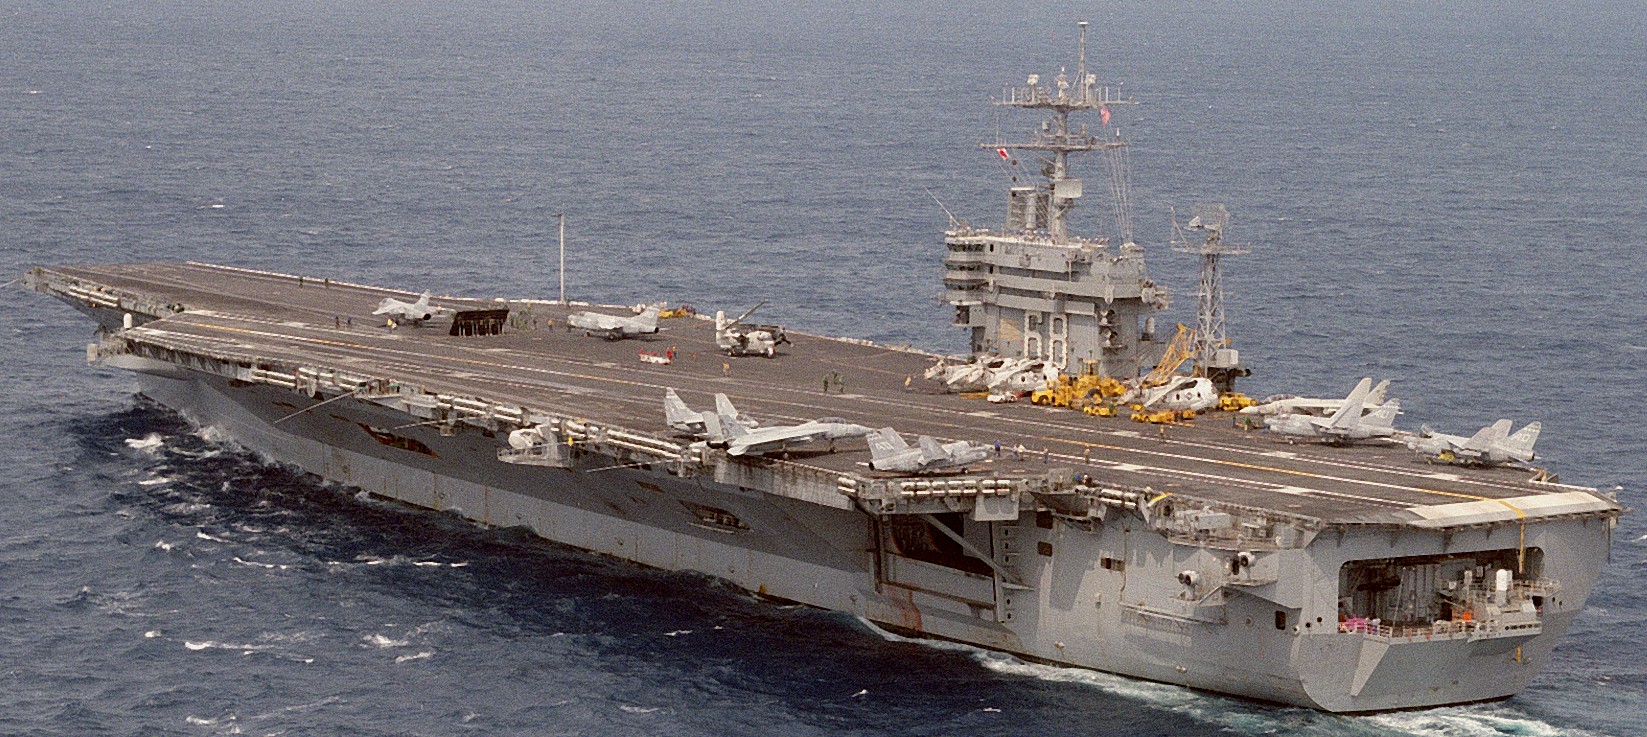 cvn-68 uss nimitz aircraft carrier us navy 43